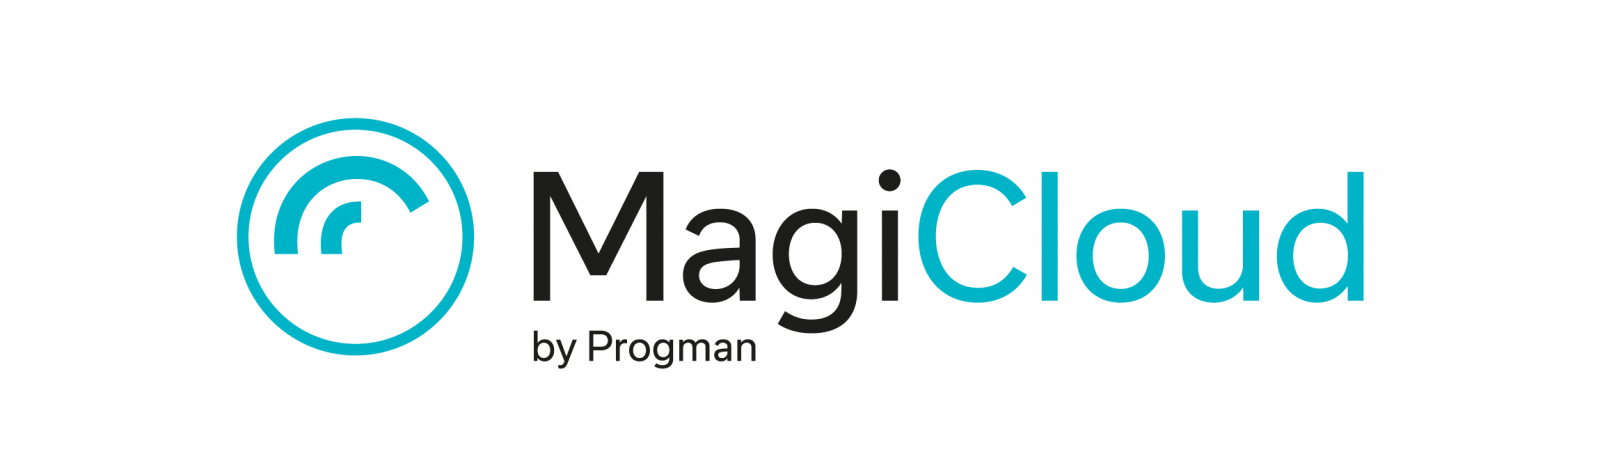 Information Bim Modelinglogo Logo - MagiCloud, Europe's largest online Building Information Modeling